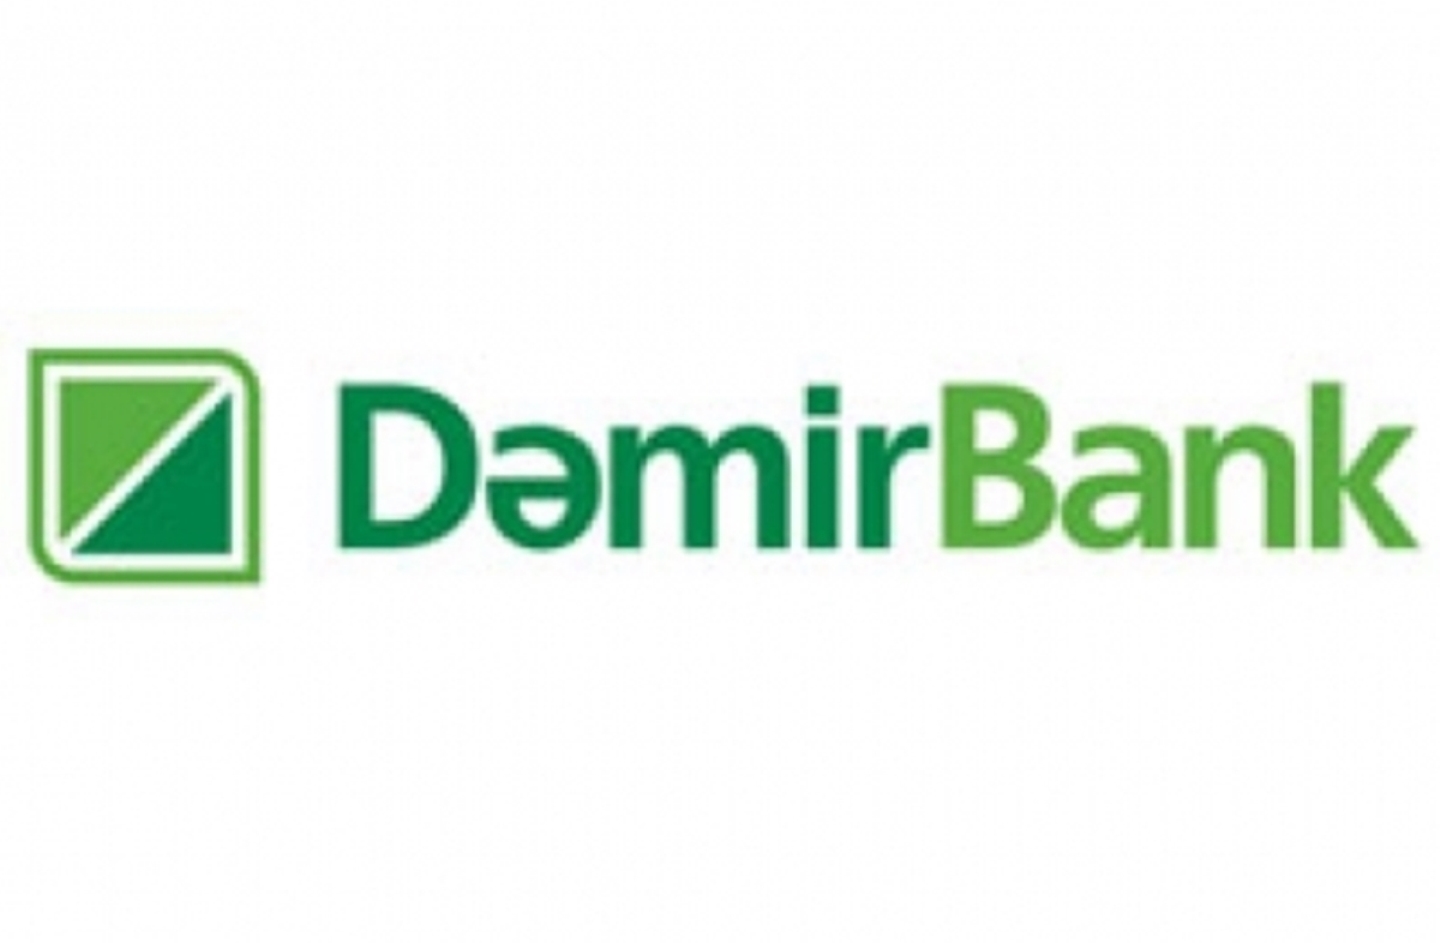 DemirBank объявляет открытый тендер с целью выбора компании для приобретения расходных материалов на 2014 год.